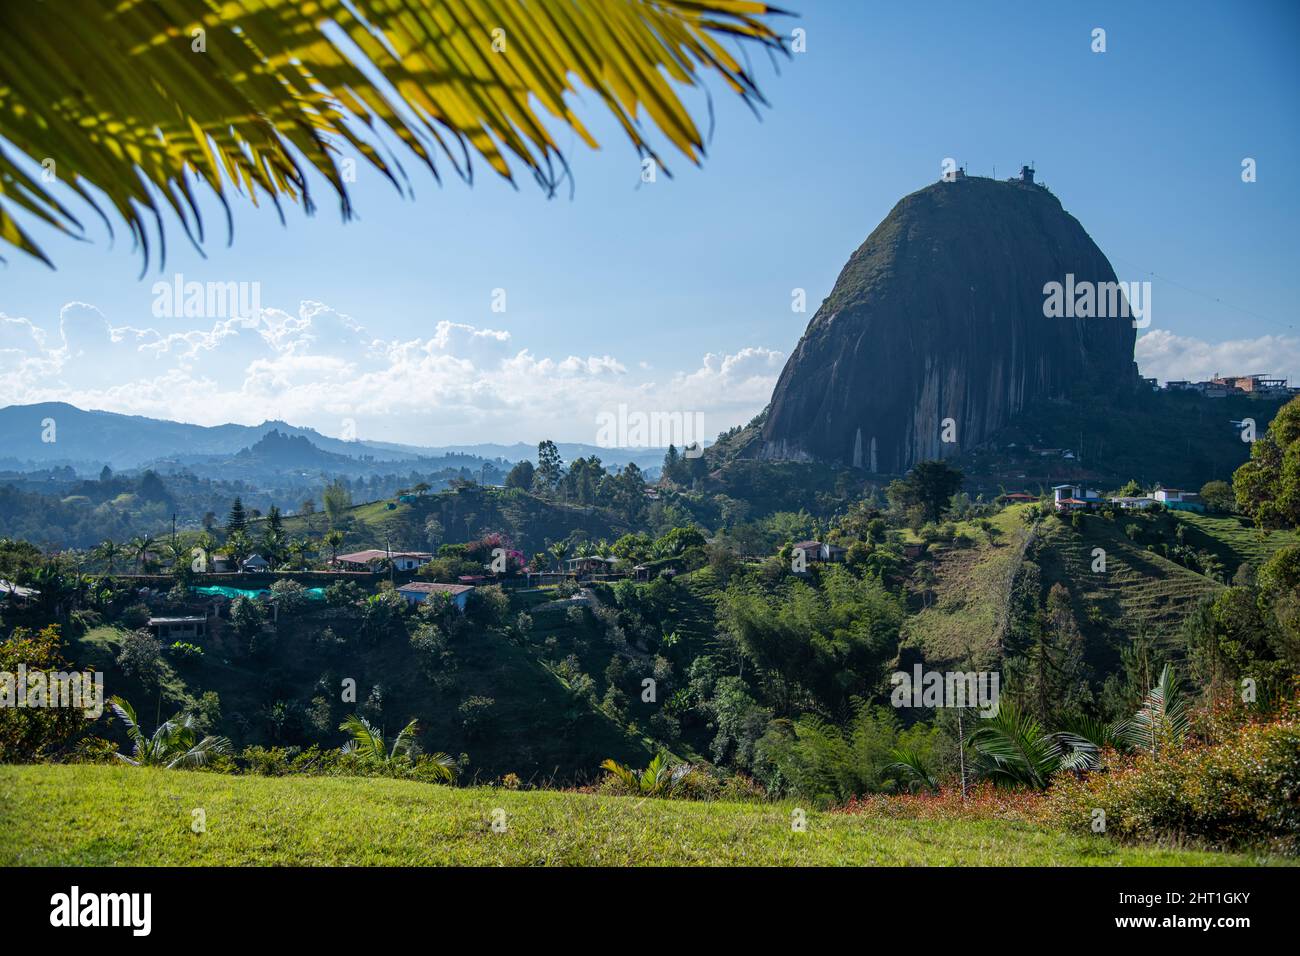 A view of El Penon de Guatape / The Rock of Guatape in Colombia Stock Photo